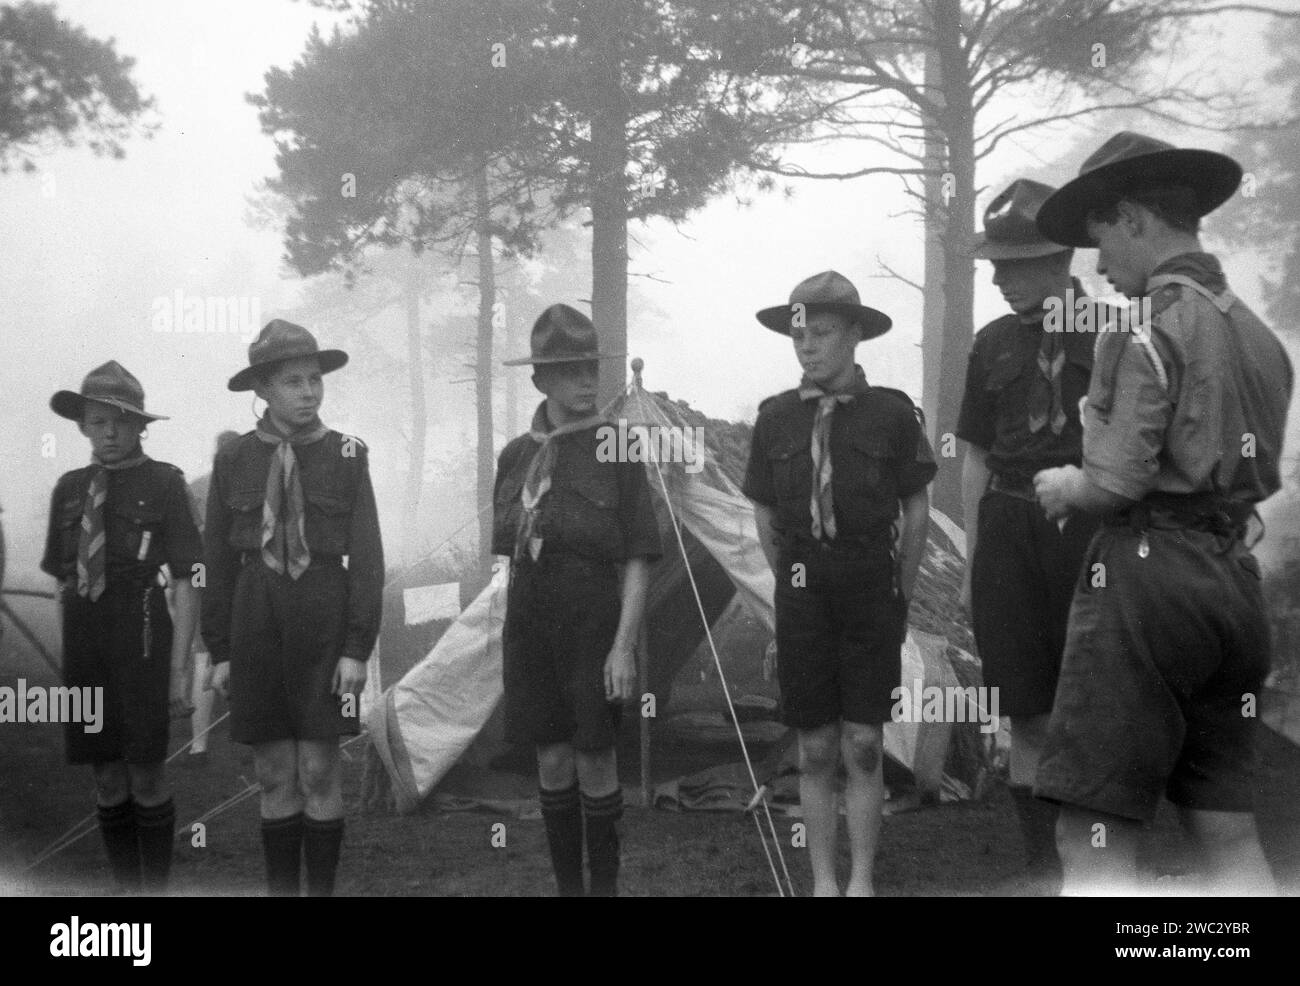 1941, historisch, pfingstsonntag und ein früherer nebeliger Morgen in einem Pfadfinderlager in Broadstone, Poole, Dorset, mit einer Inspektion der Brachbruchtruppen. Brownsea Island, ebenfalls in der Nähe von Poole, war 1907 der Ort, an dem der Gründer der Pfadfinderbewegung, British Army Officier, Robert Baden-Powell, sein Straflager für Jungen aufbaute und im folgenden Jahr sein berühmtes Buch Scouting for Boys veröffentlichte. Zwei Jahre später gründete Baden-Powell mit seiner Schwester Agnes die Girl Guides. Stockfoto